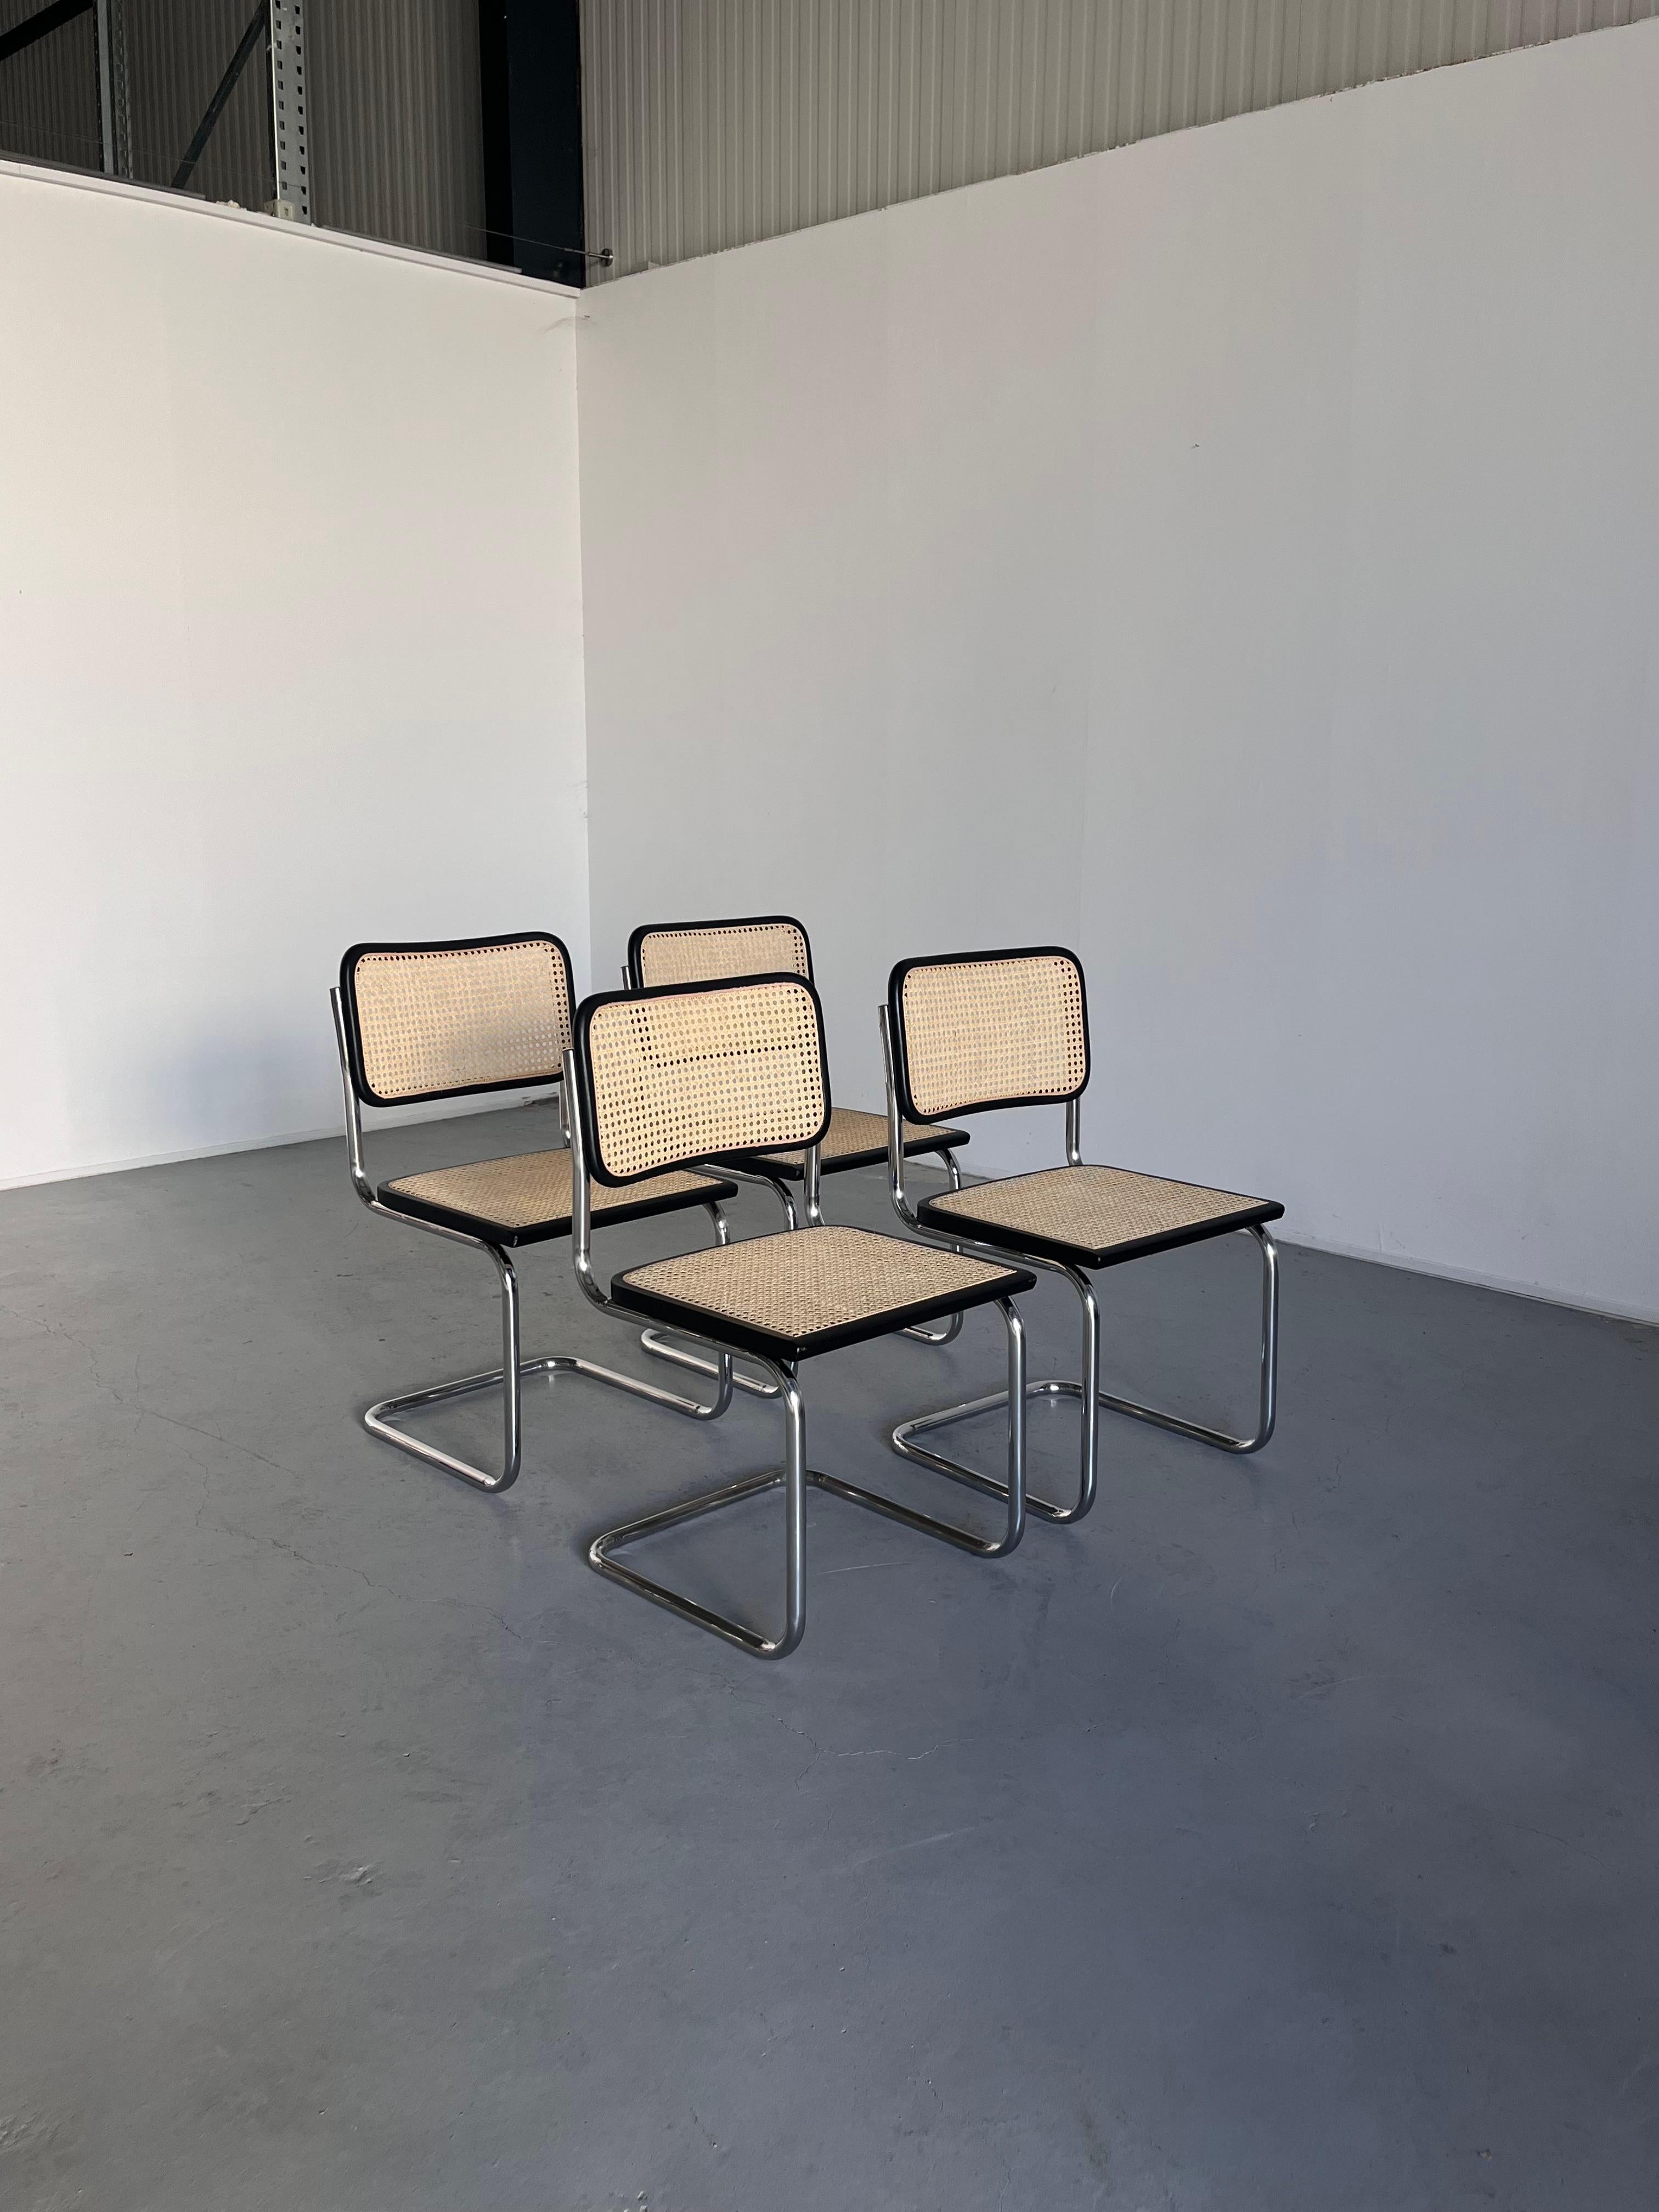 Un ensemble de quatre chaises luge vintage Marcel Breuer Design/One B32.
Production italienne de la fin des années 1980 / début des années 1990.

En très bon état vintage avec les signes attendus de l'âge, principalement quelques rayures de surface